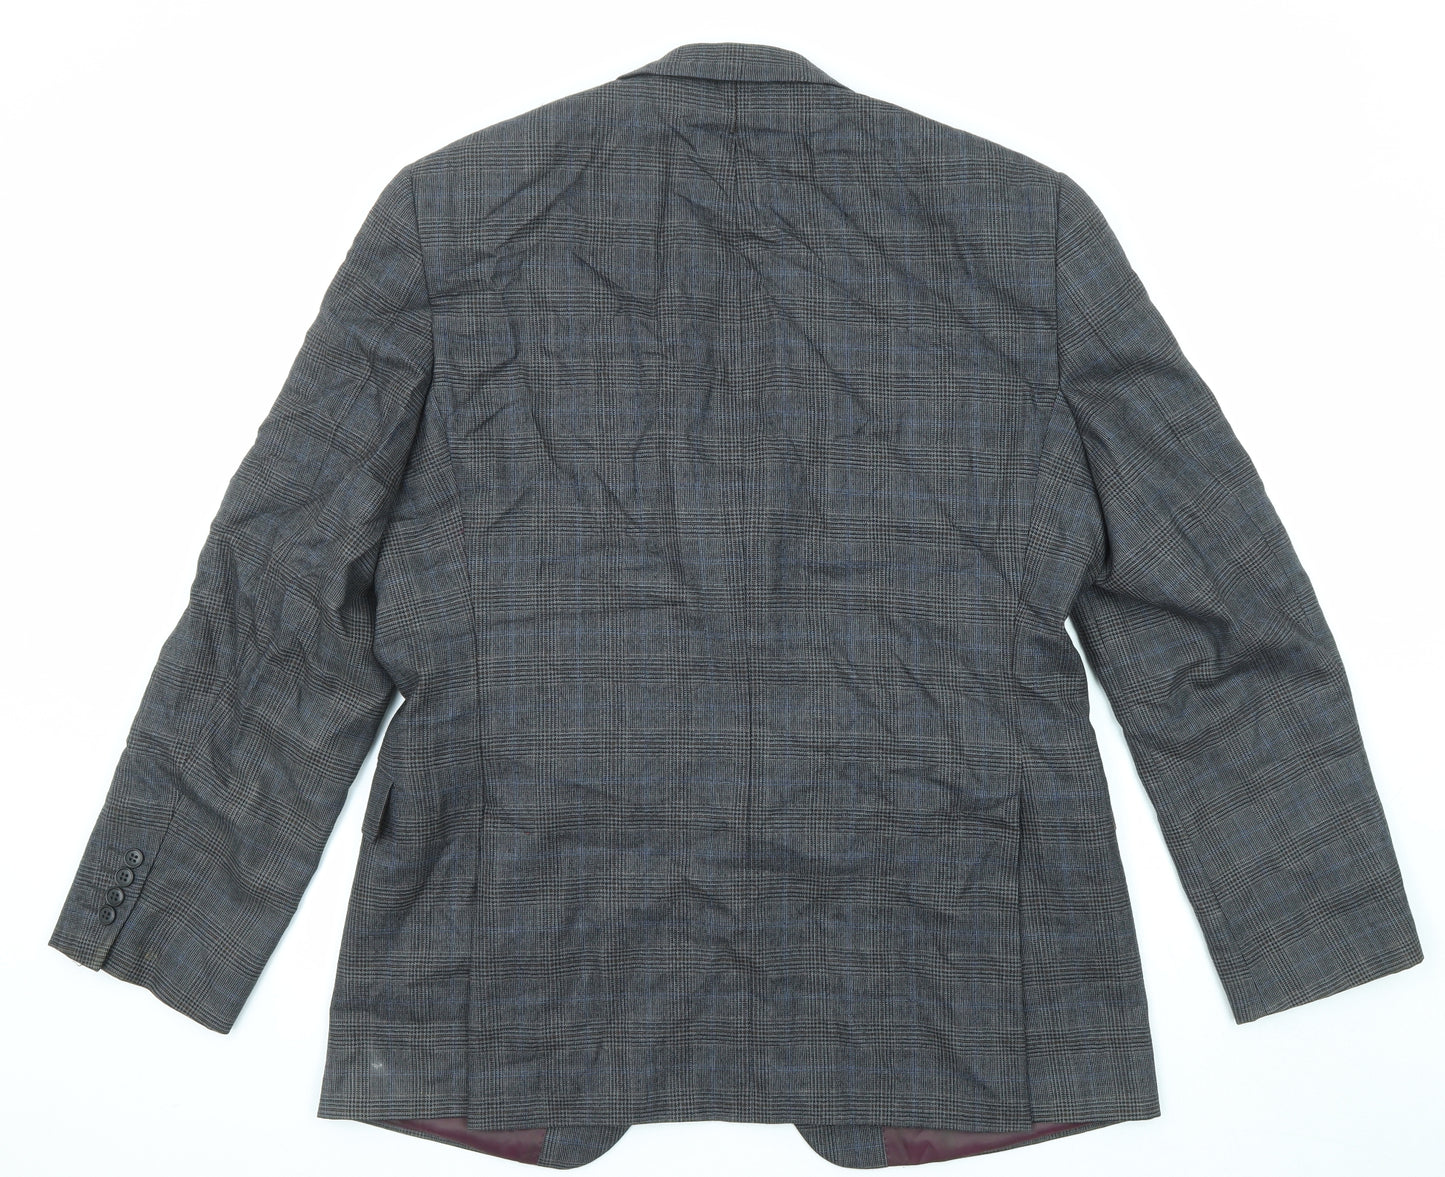 John Lewis Mens Grey Plaid Wool Jacket Suit Jacket Size 42 Regular